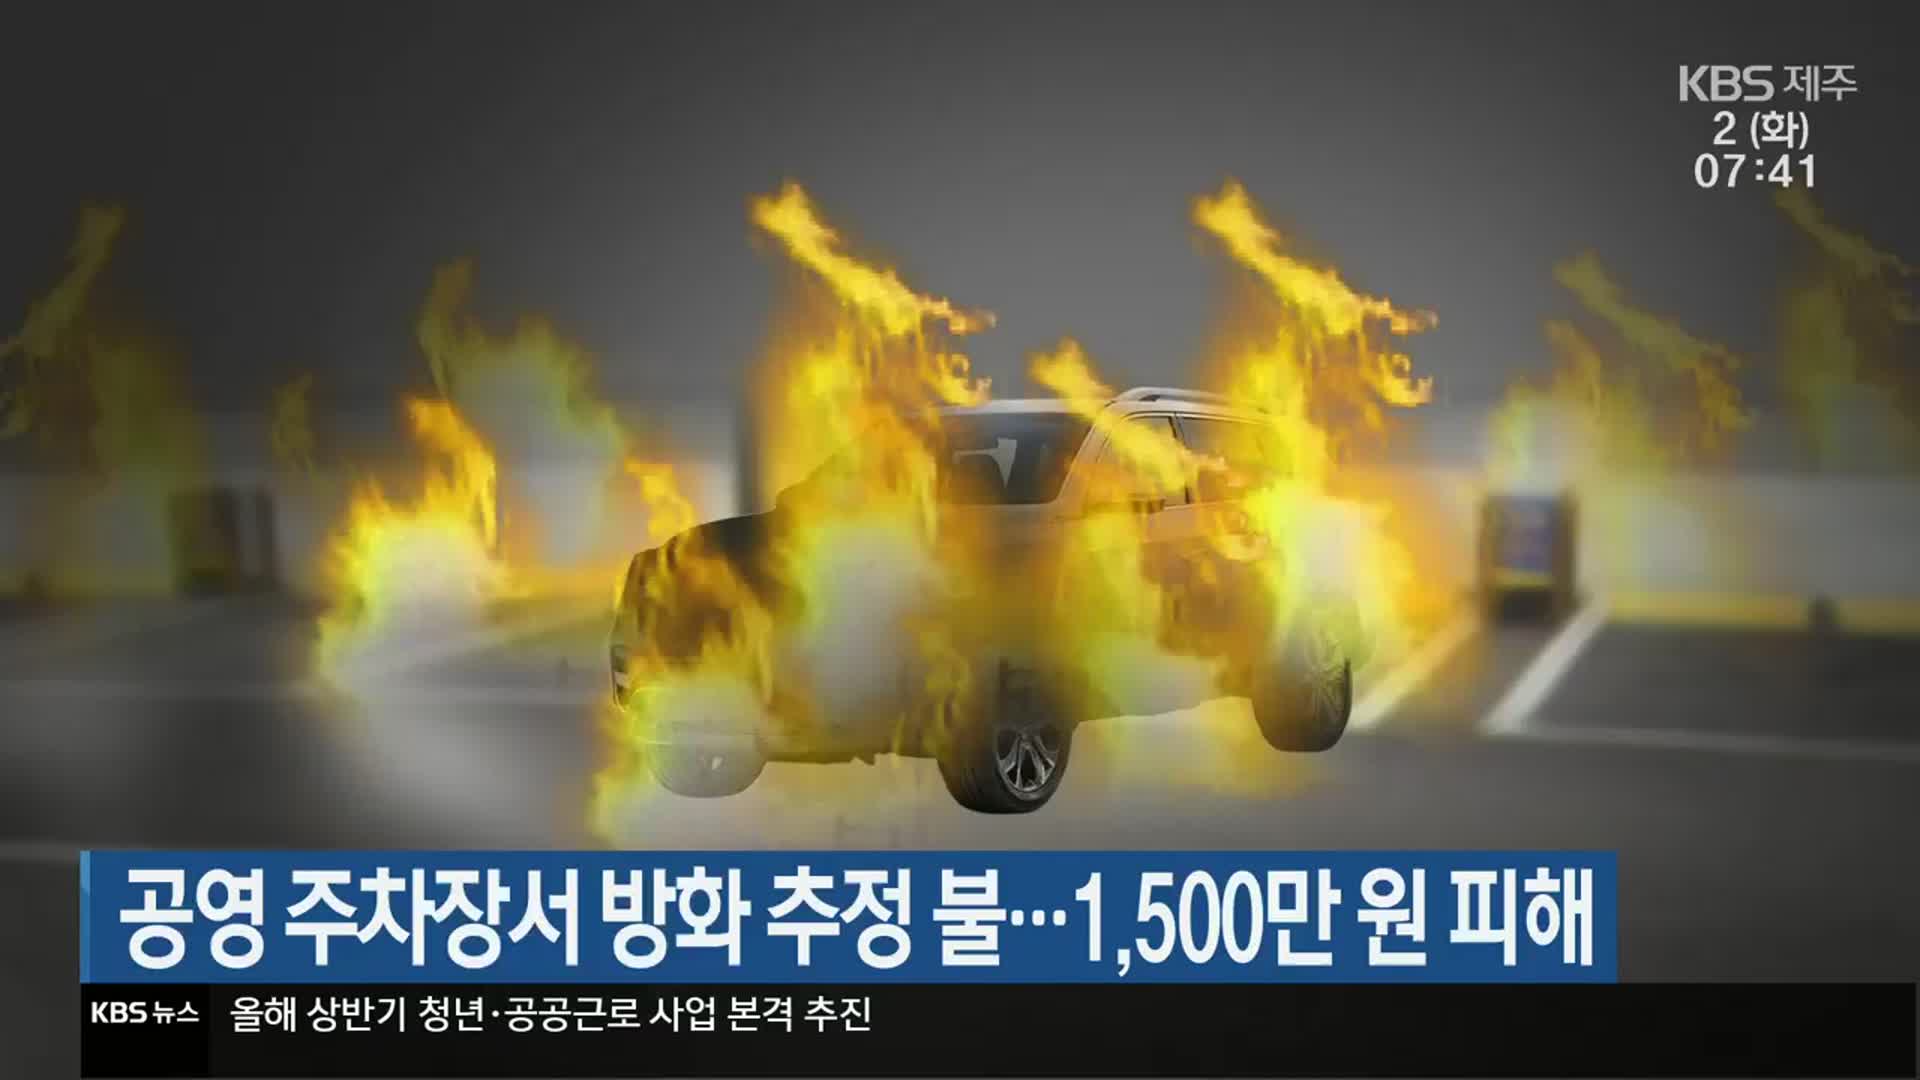 공영 주차장서 방화 추정 불…1,500만 원 피해